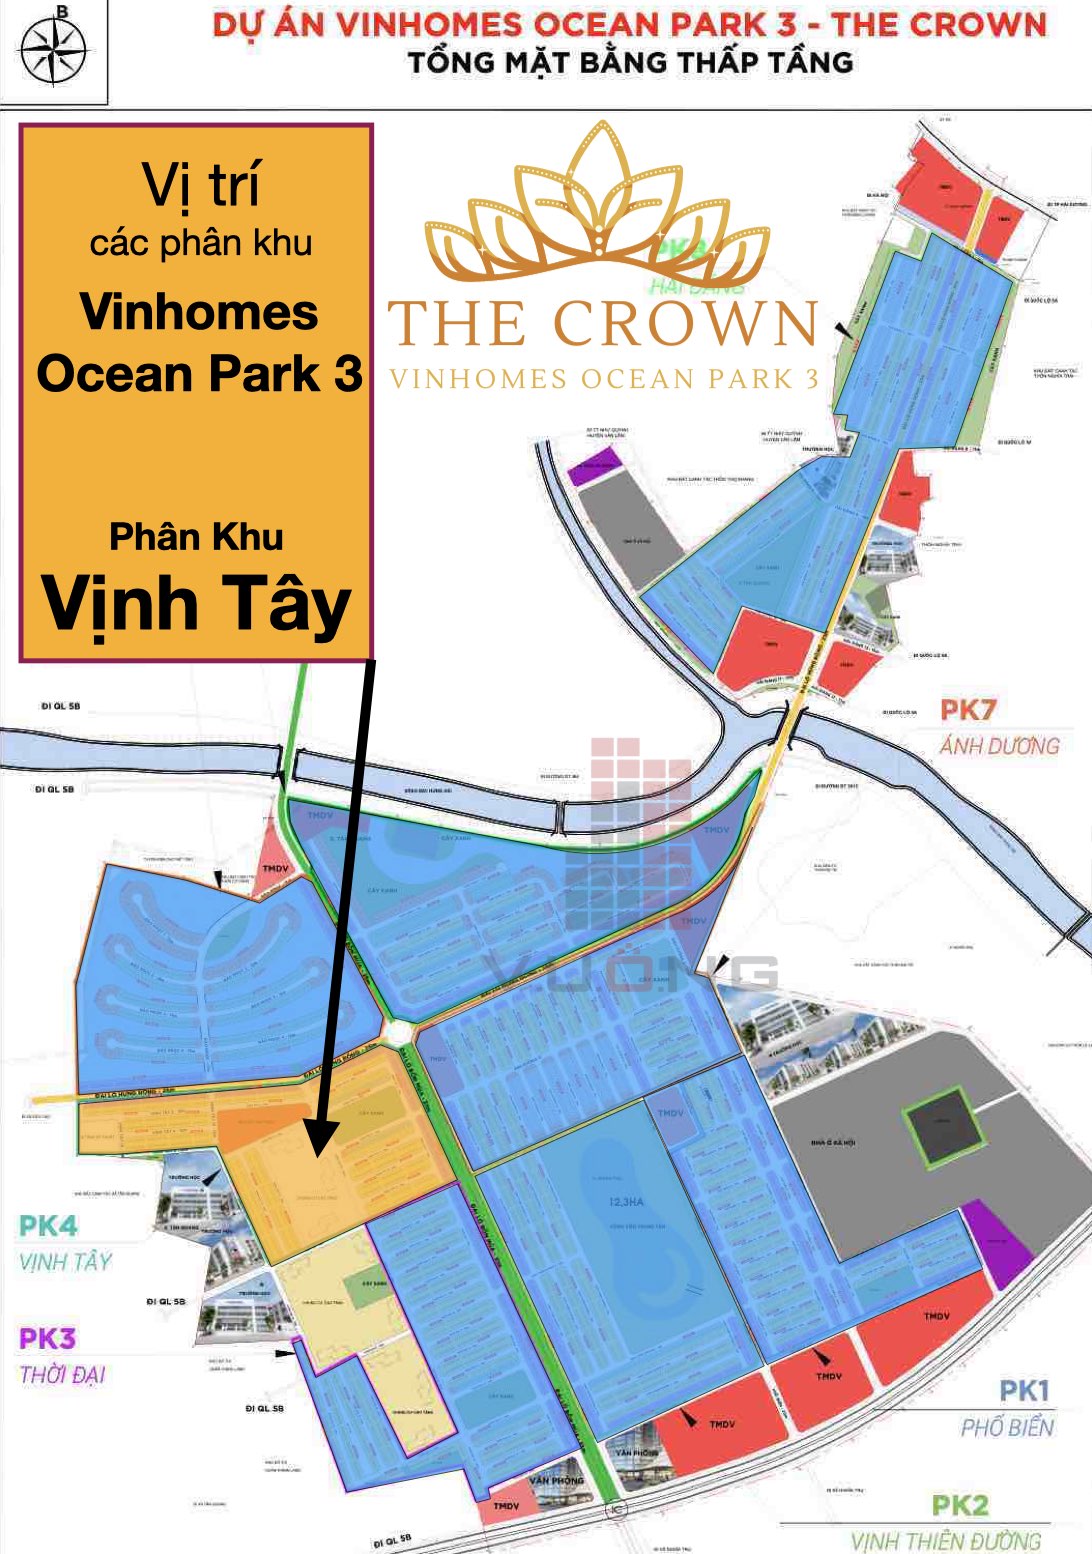 Phân khu Vịnh Tây Vinhomes Ocean Park 3 The Crown